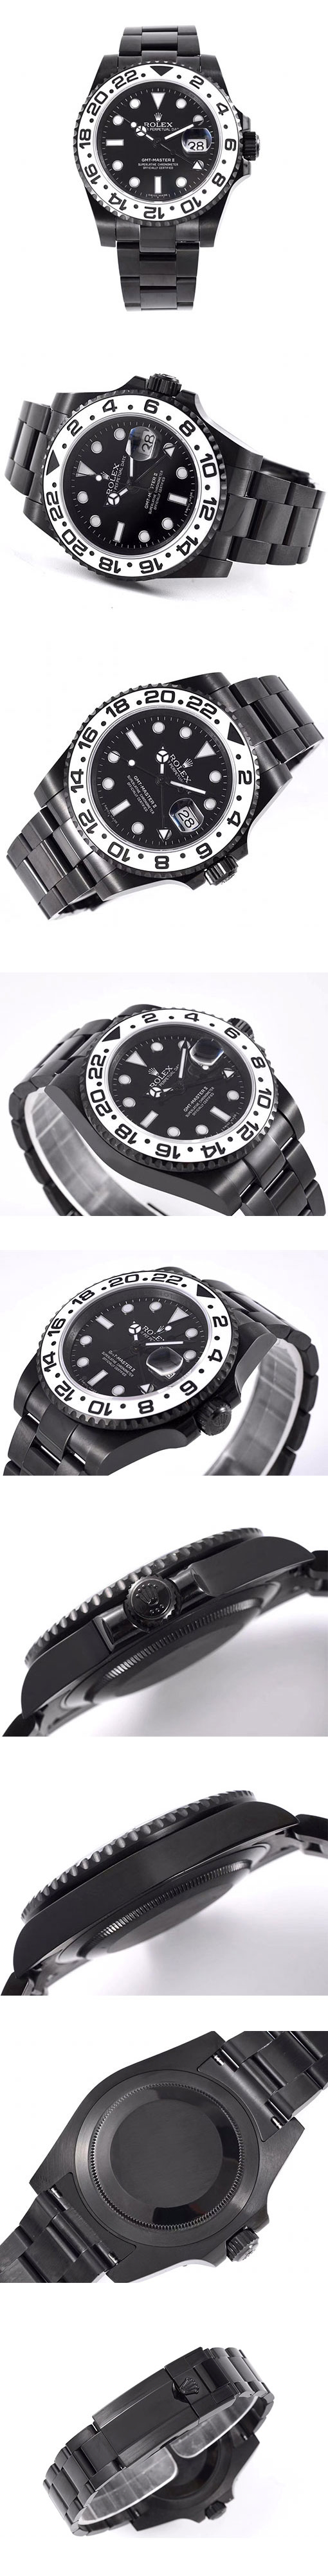 「黒サムライオレオ」ロレックスコピー時計 GMTマスター II 116710 ブラック VR Factoryカスタム